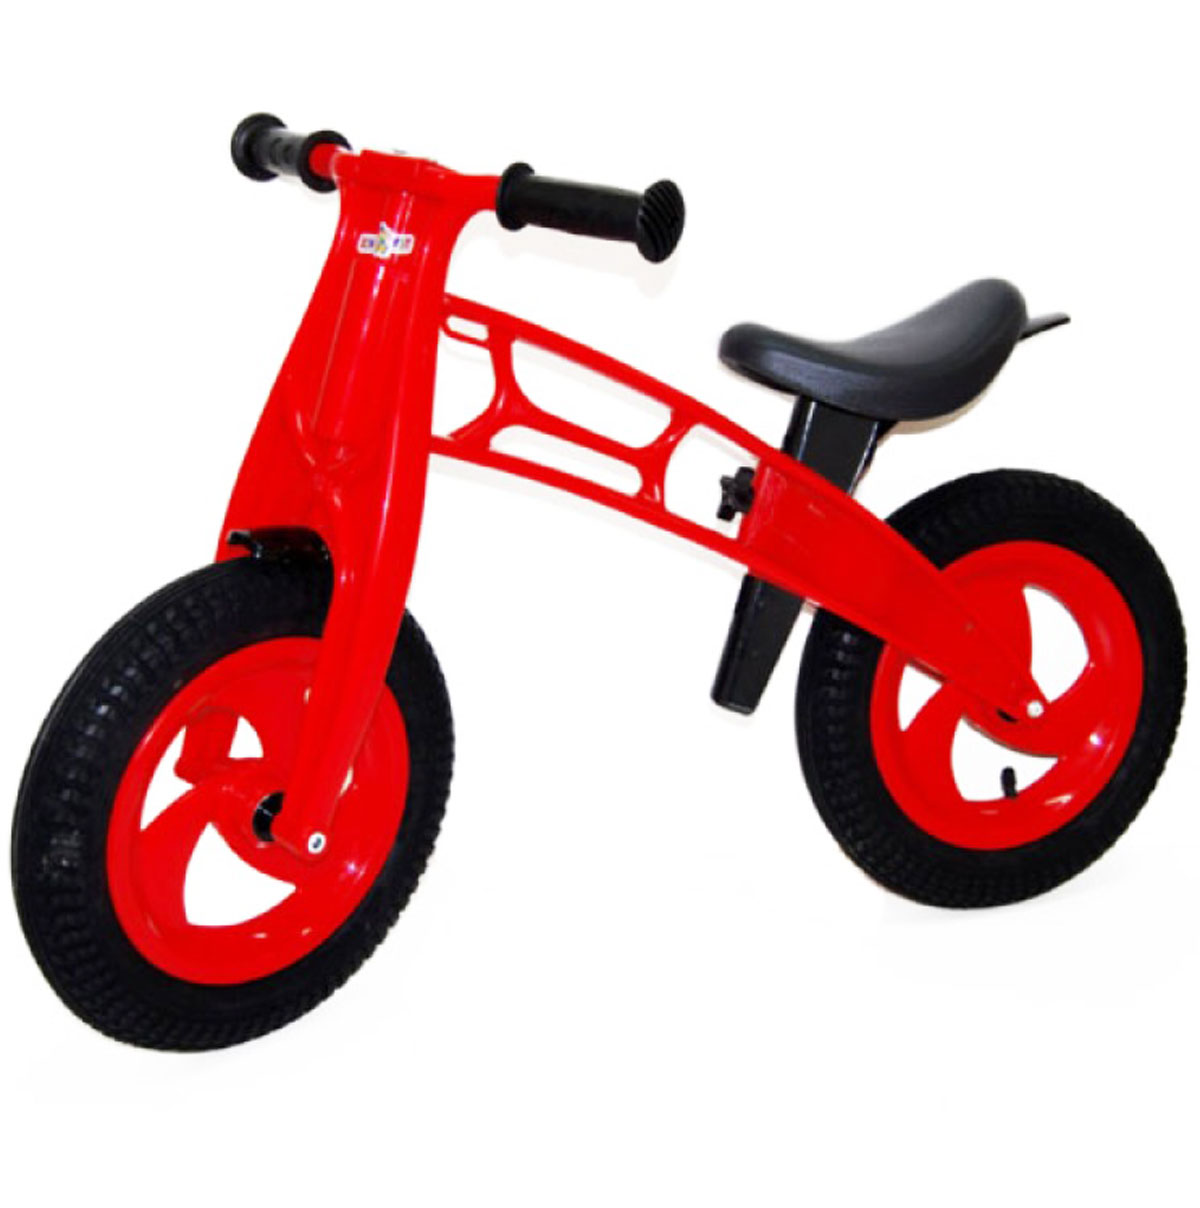 Двухколесный беговел. Велобег kinder way Orion Toys. Детский велобег от 2 с резиновыми колесами. Cross Bike беговел. Велобег Lamborghini.